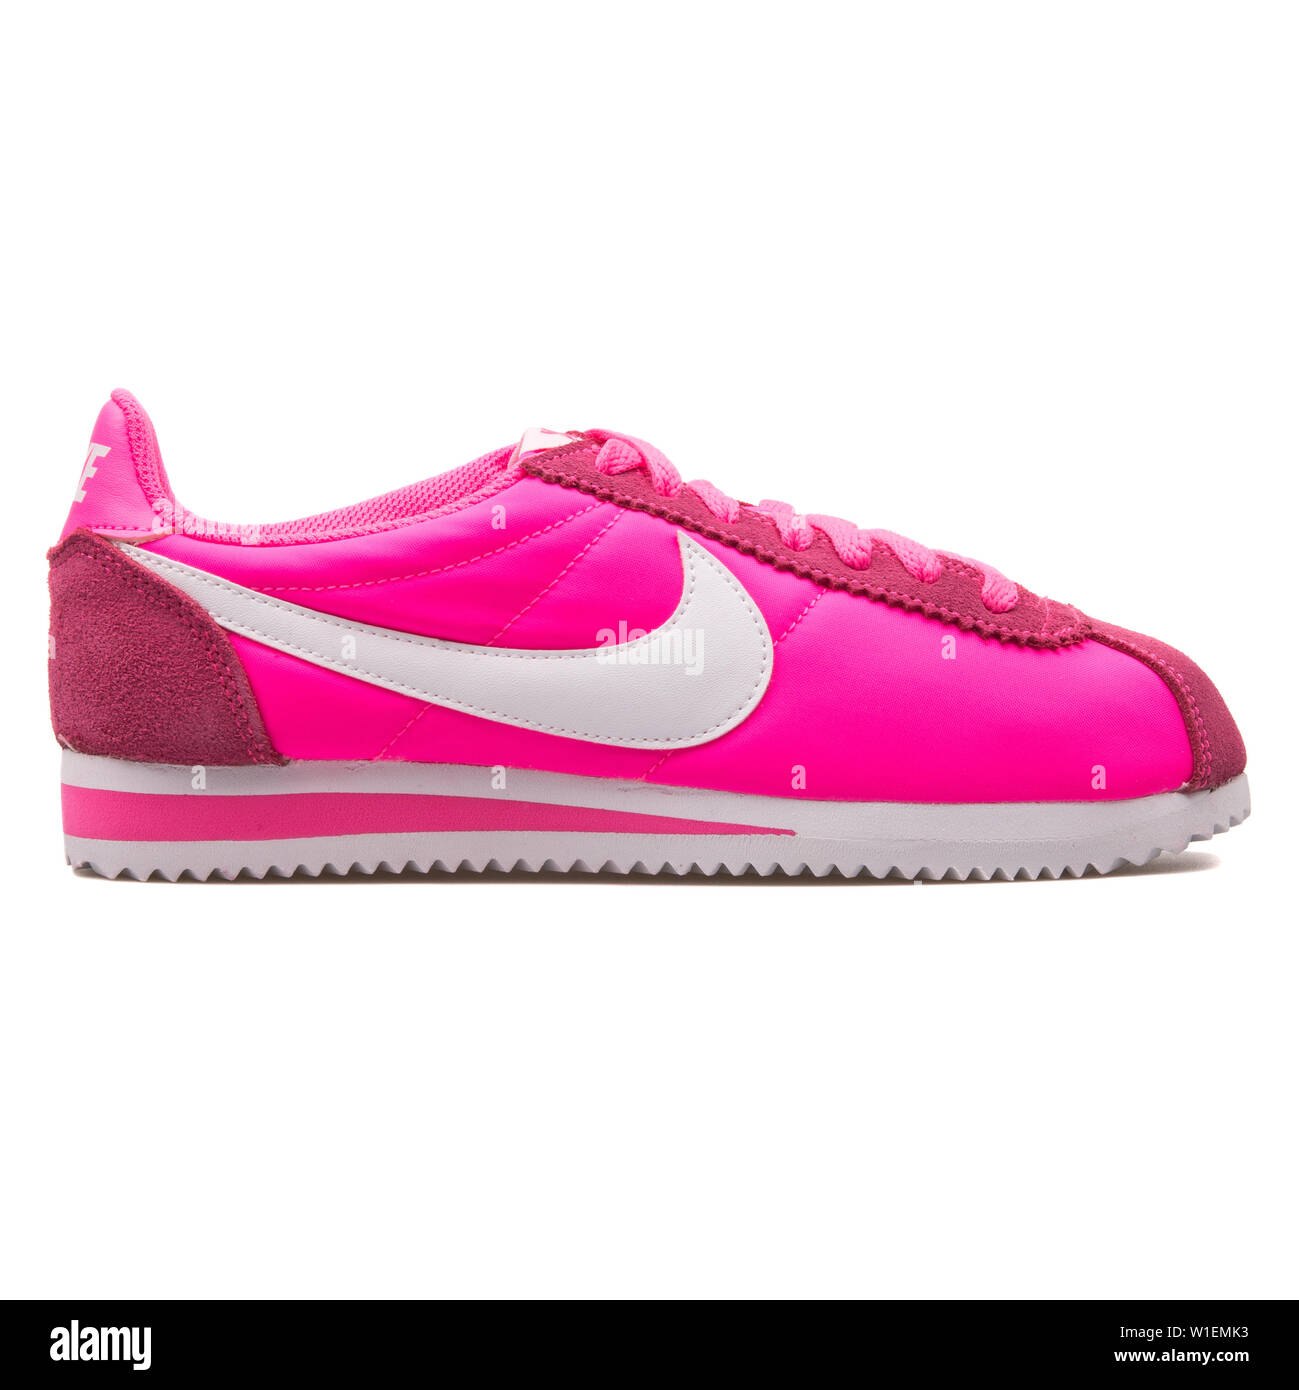 Wien, Österreich - 30 August 2017: Nike Classic Cortez Nylon pink Sneaker  auf weißem Hintergrund Stockfotografie - Alamy